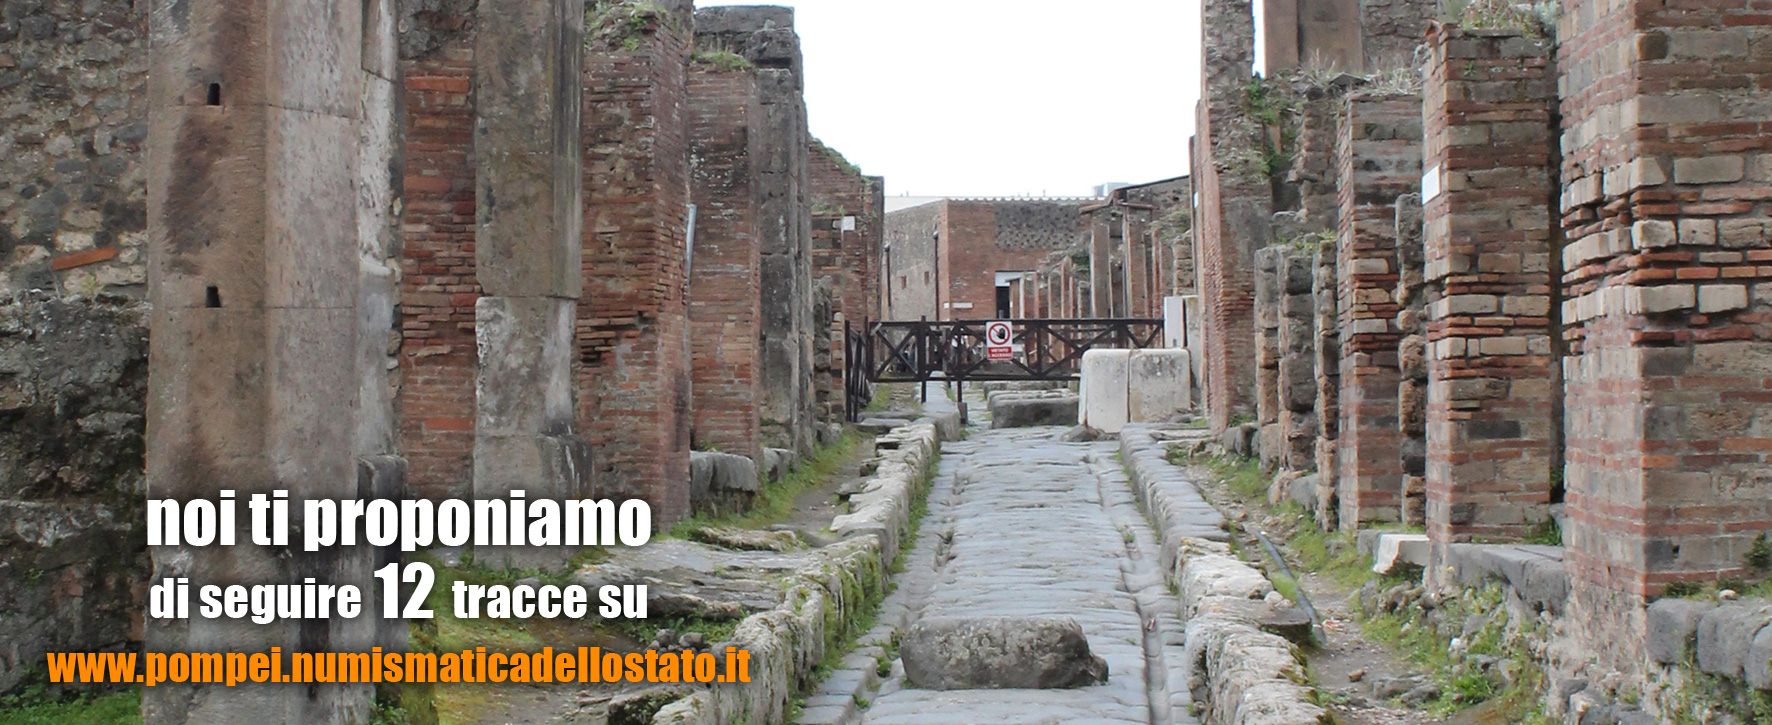 noi ti proponiamo di seguire 12 tracce su www.pompei.numismaticadellostato.it